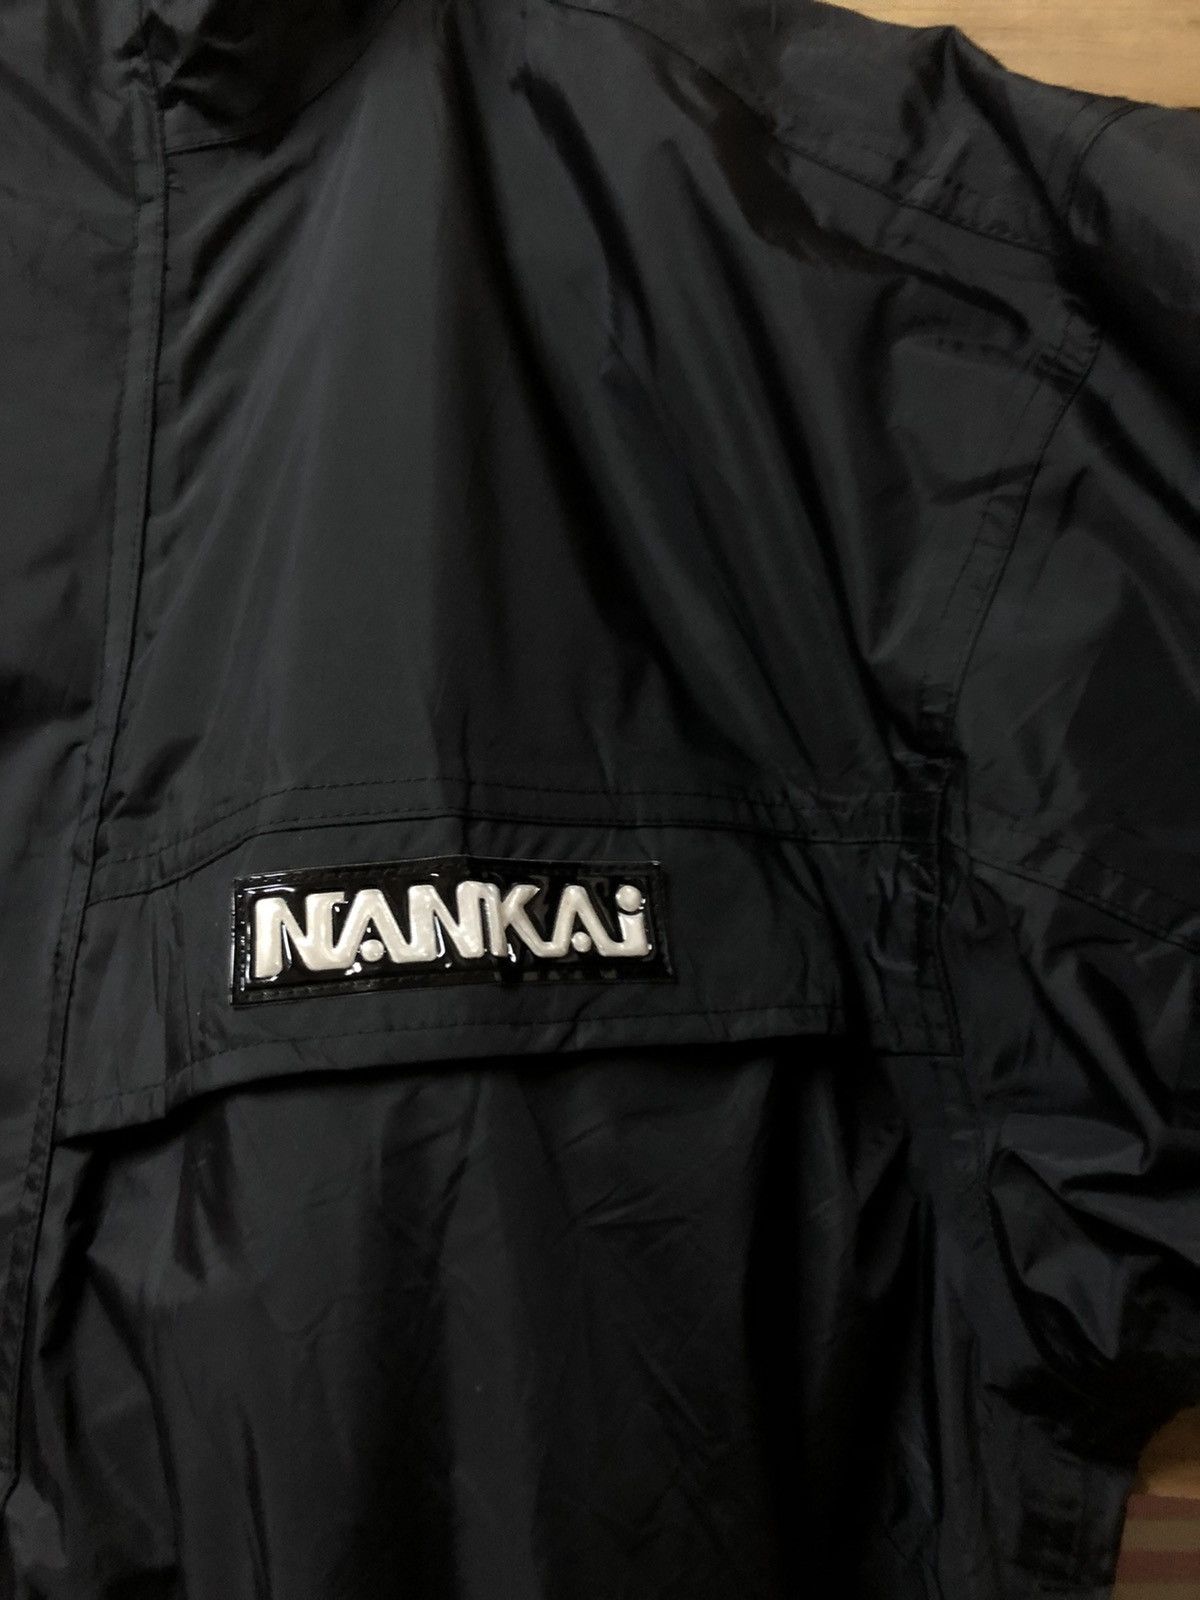 Sports Specialties - Nankai Motorcycle Hyper Rain Gear Long Jacket - 9